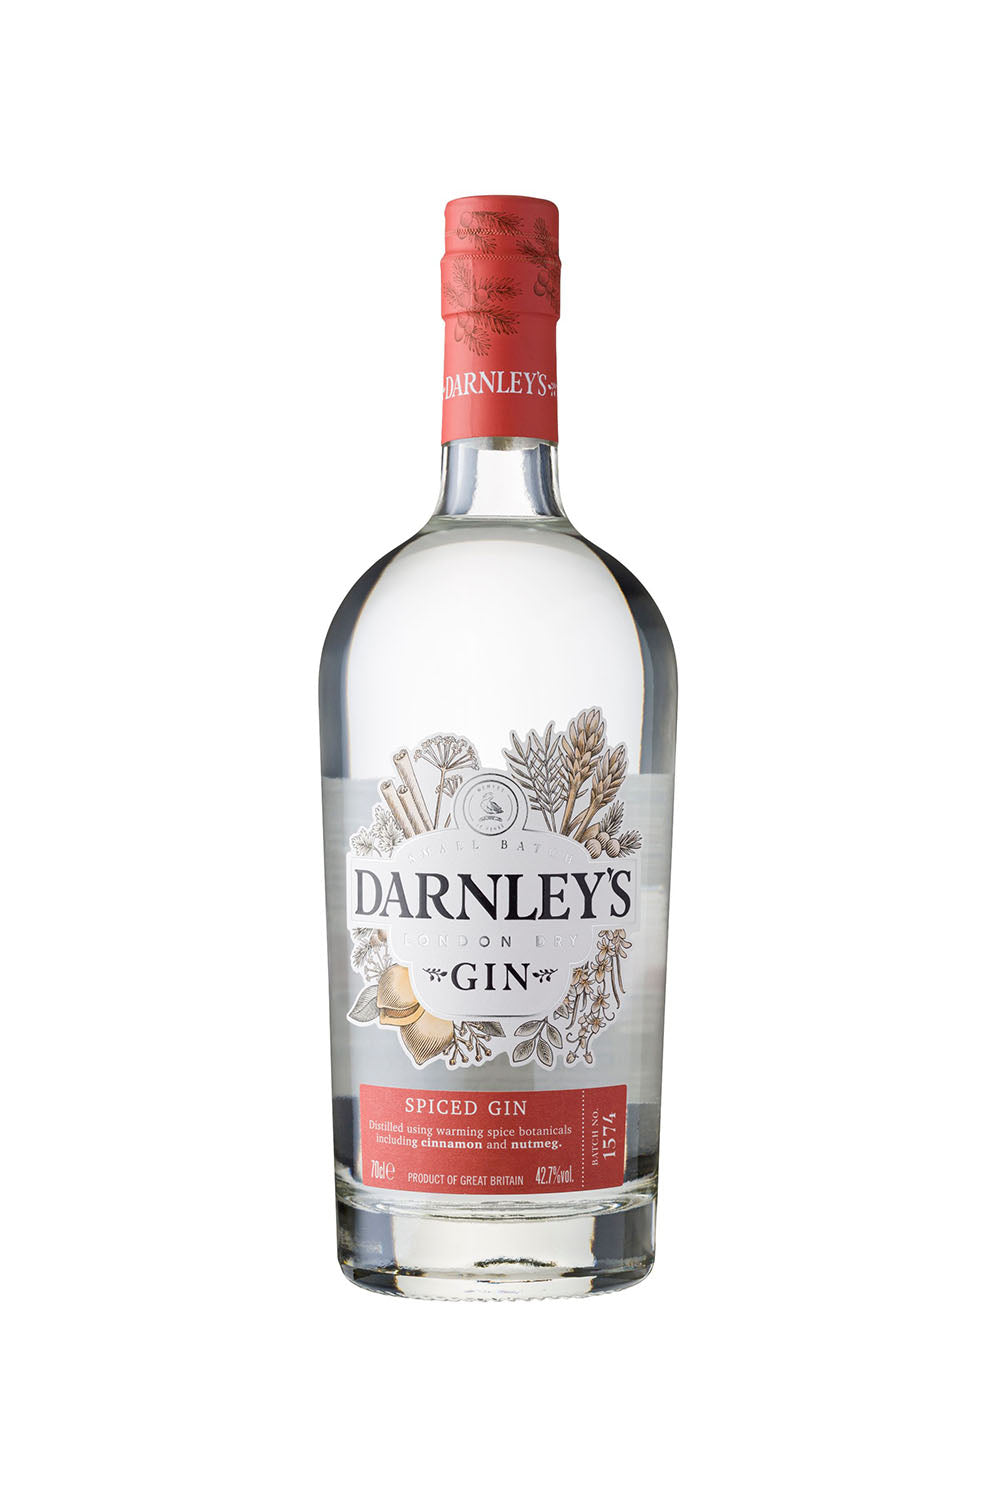 Darnley's Gin, Small Batch Scottish Gin - Spiced Gin